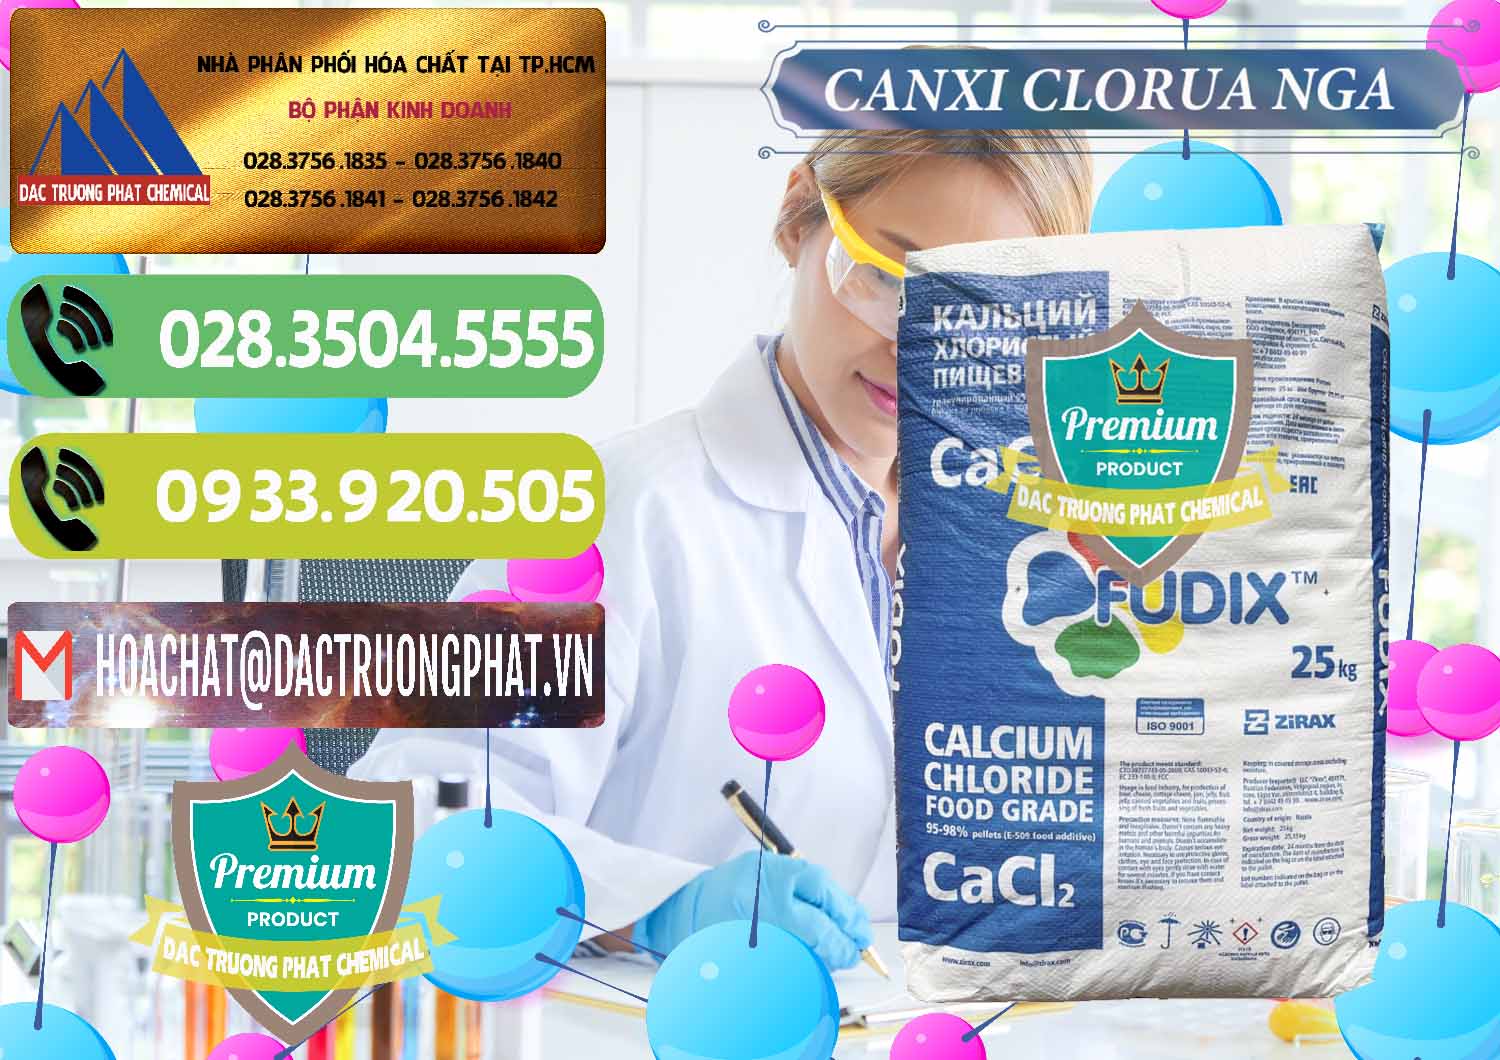 Đơn vị chuyên cung cấp & bán CaCl2 – Canxi Clorua Nga Russia - 0430 - Công ty cung cấp _ phân phối hóa chất tại TP.HCM - hoachatmientay.vn